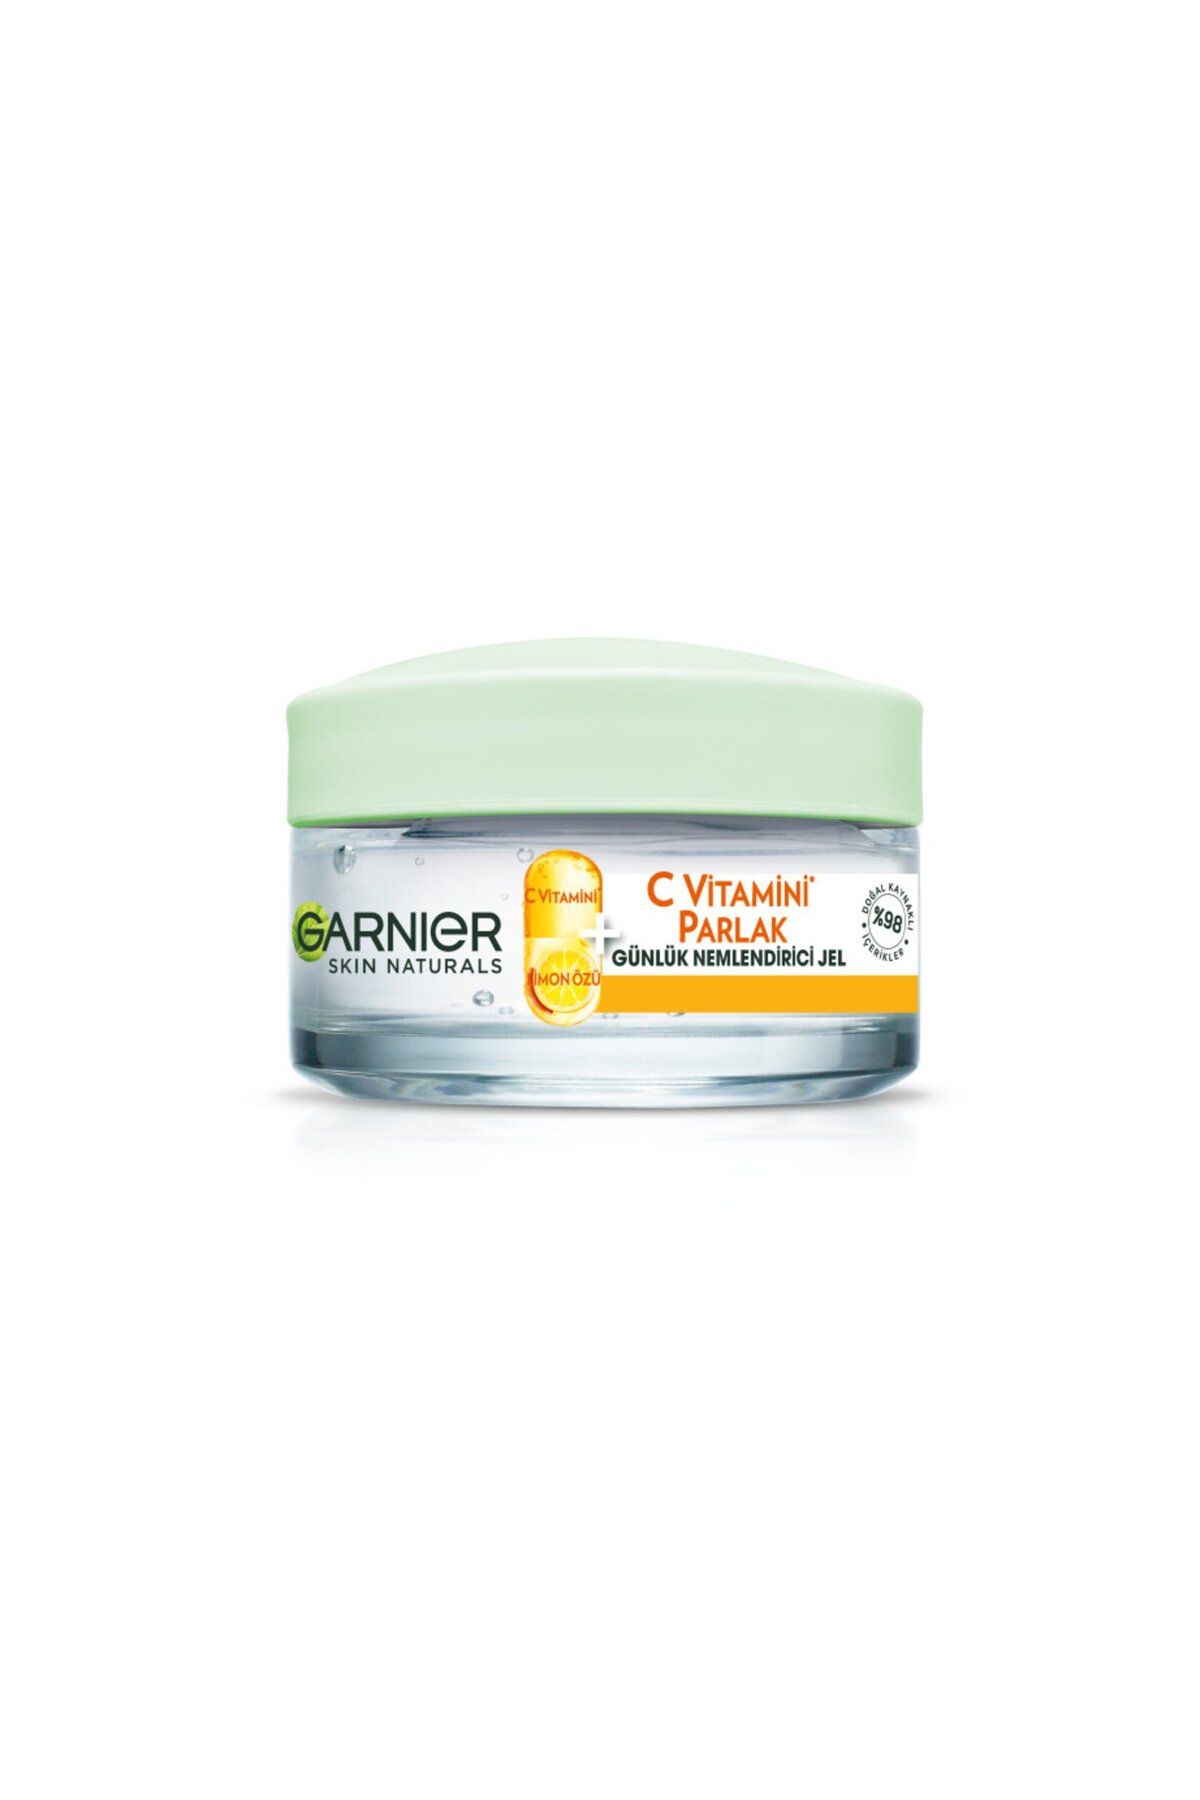 Garnier C vitaminli Nemlendirici Jel Daha Aydınlık Ve Parlak Cilt 50 ml